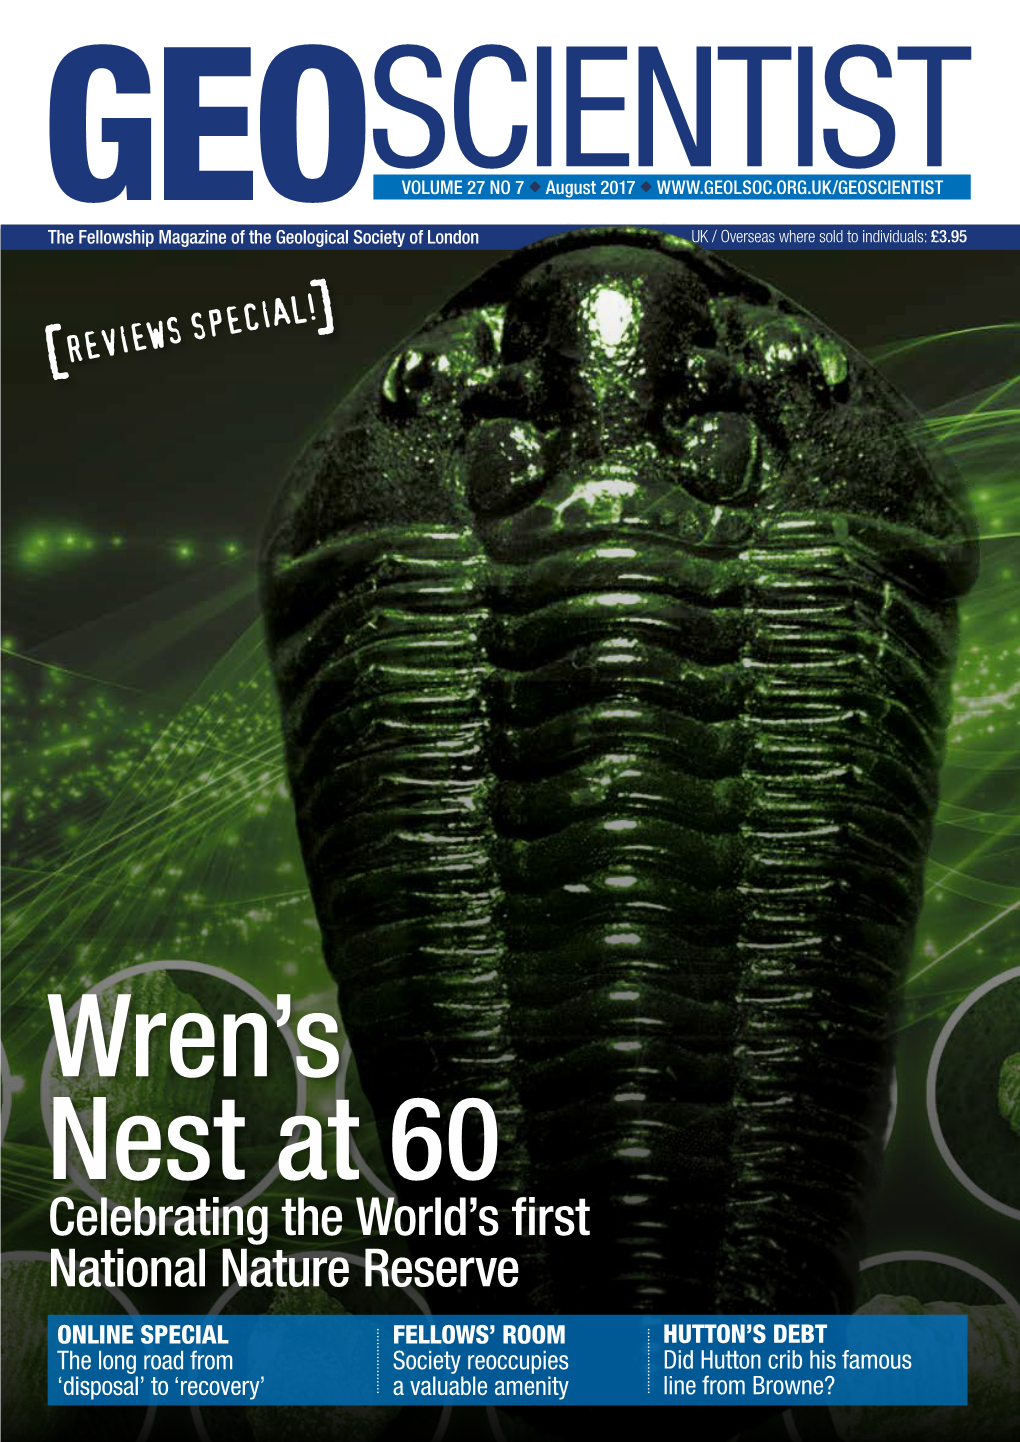 Wren's Nest at 60